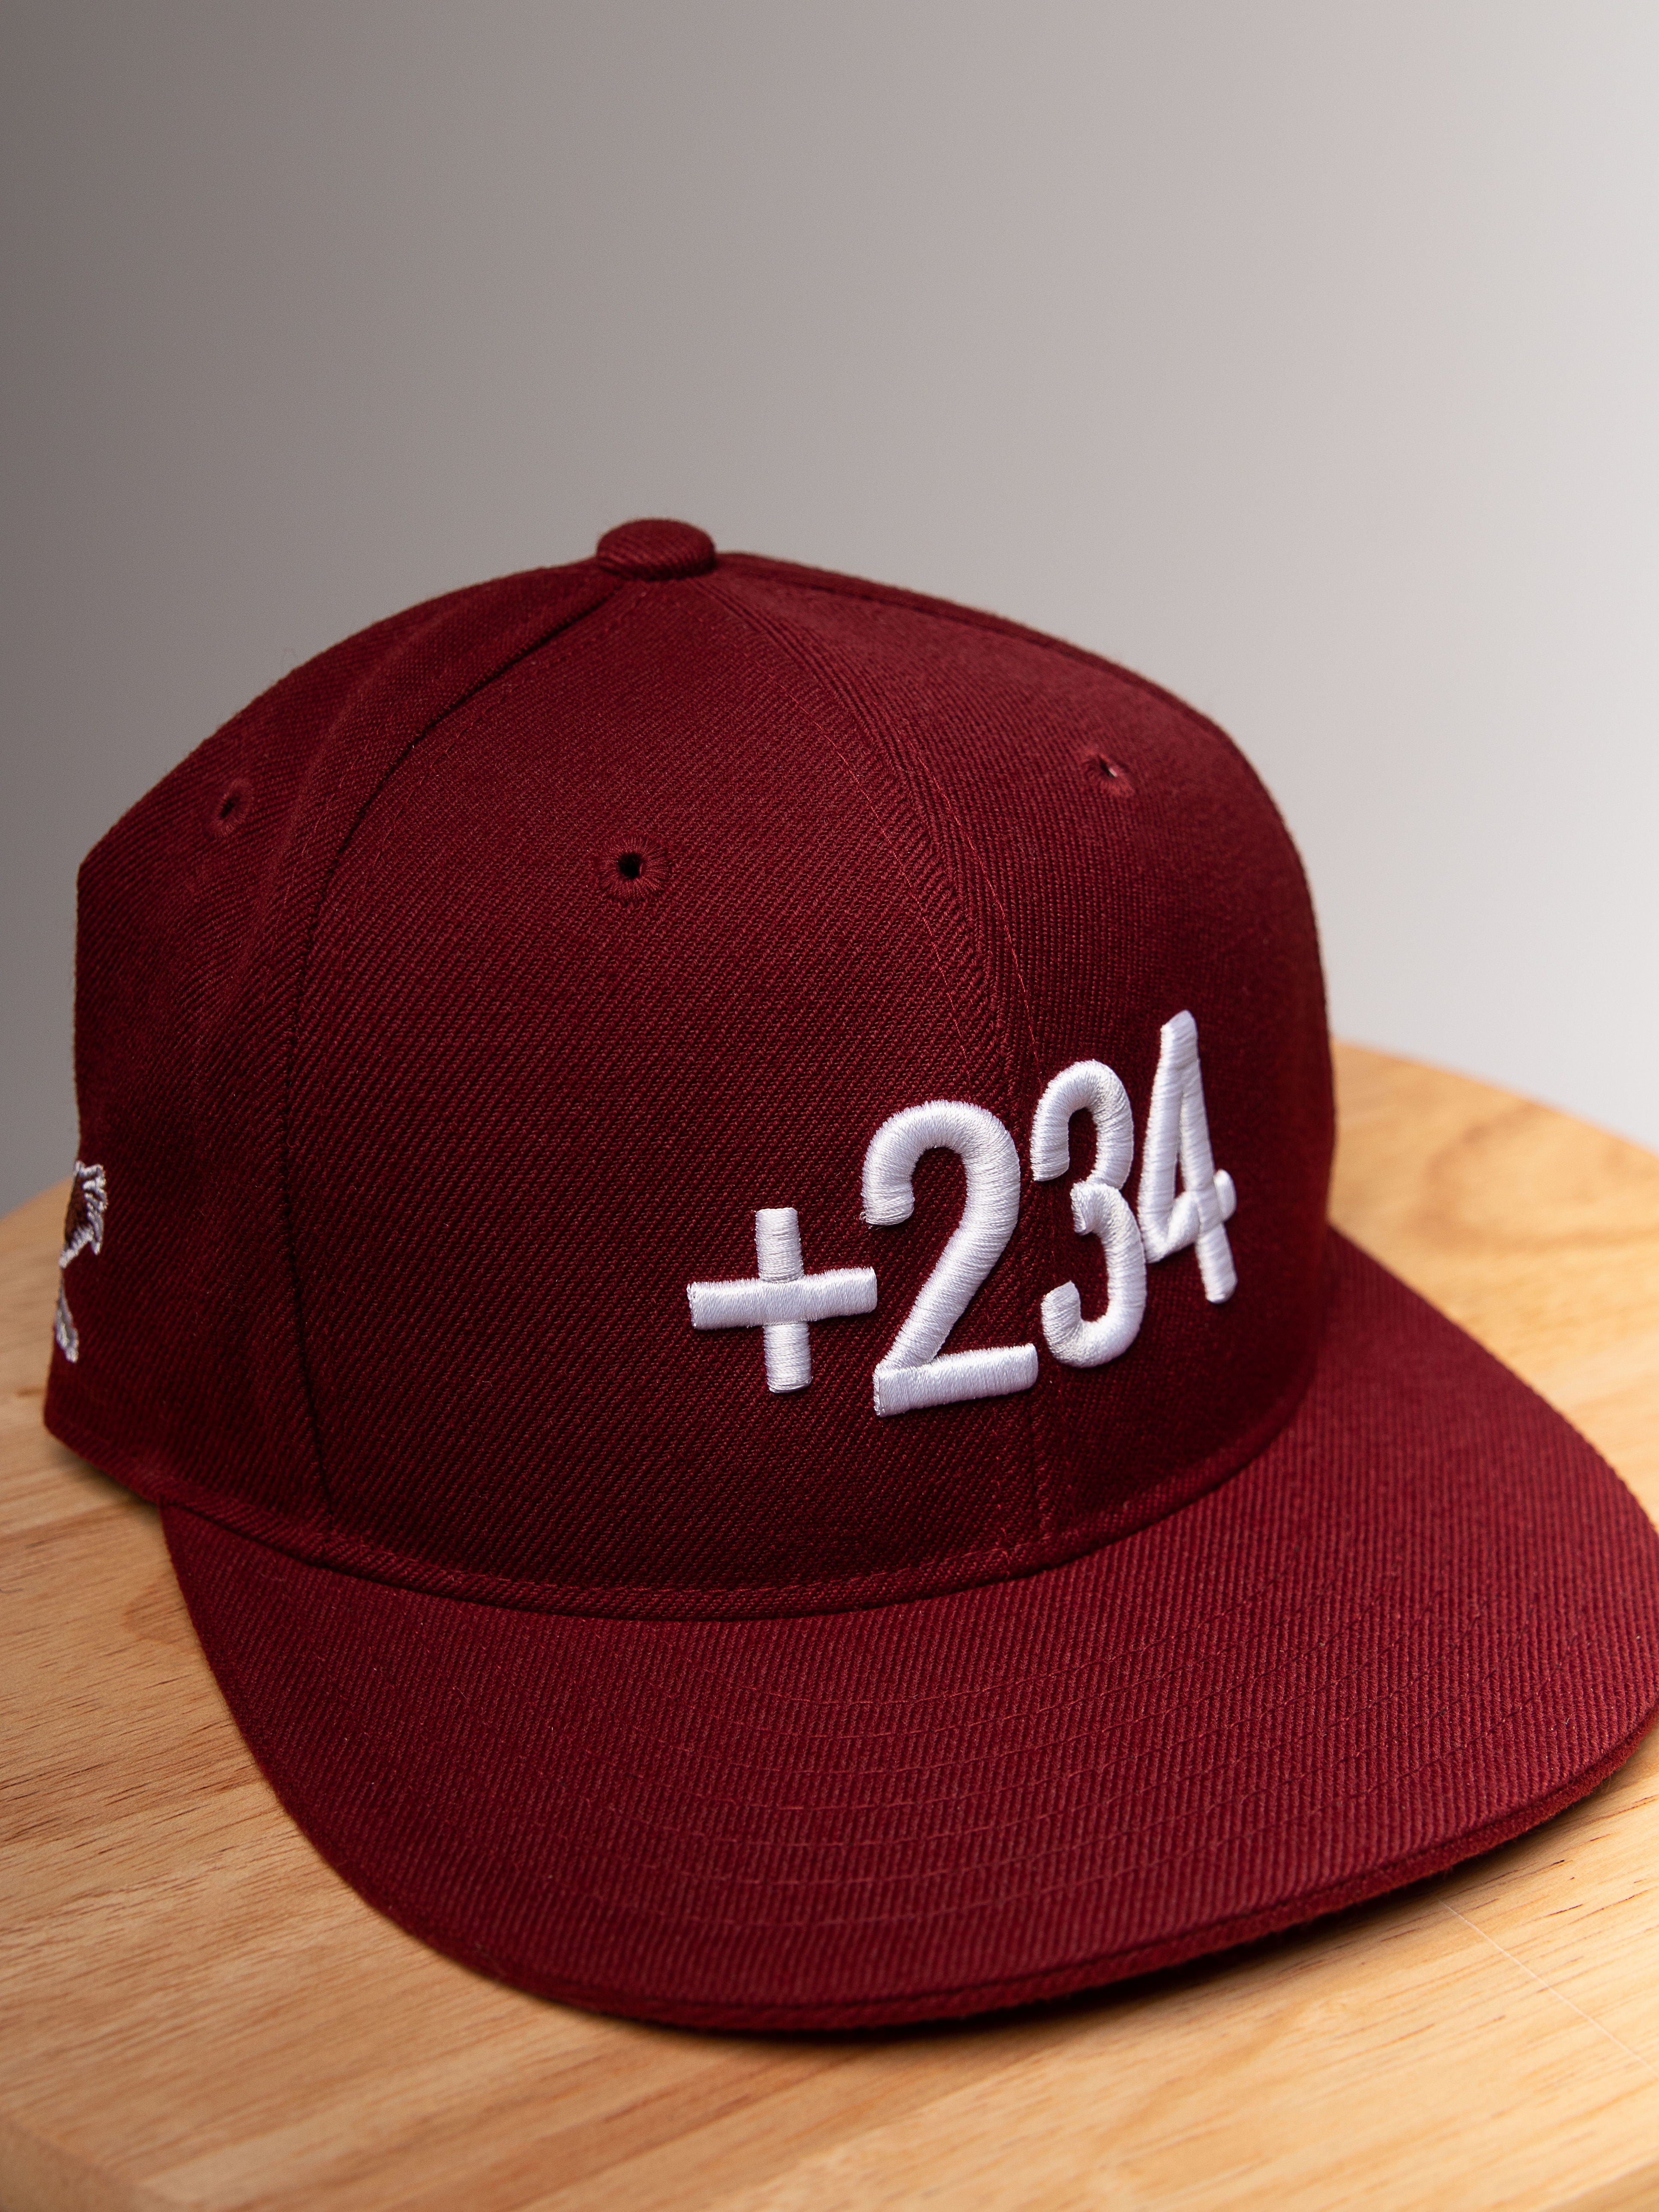 THE +234 CAP